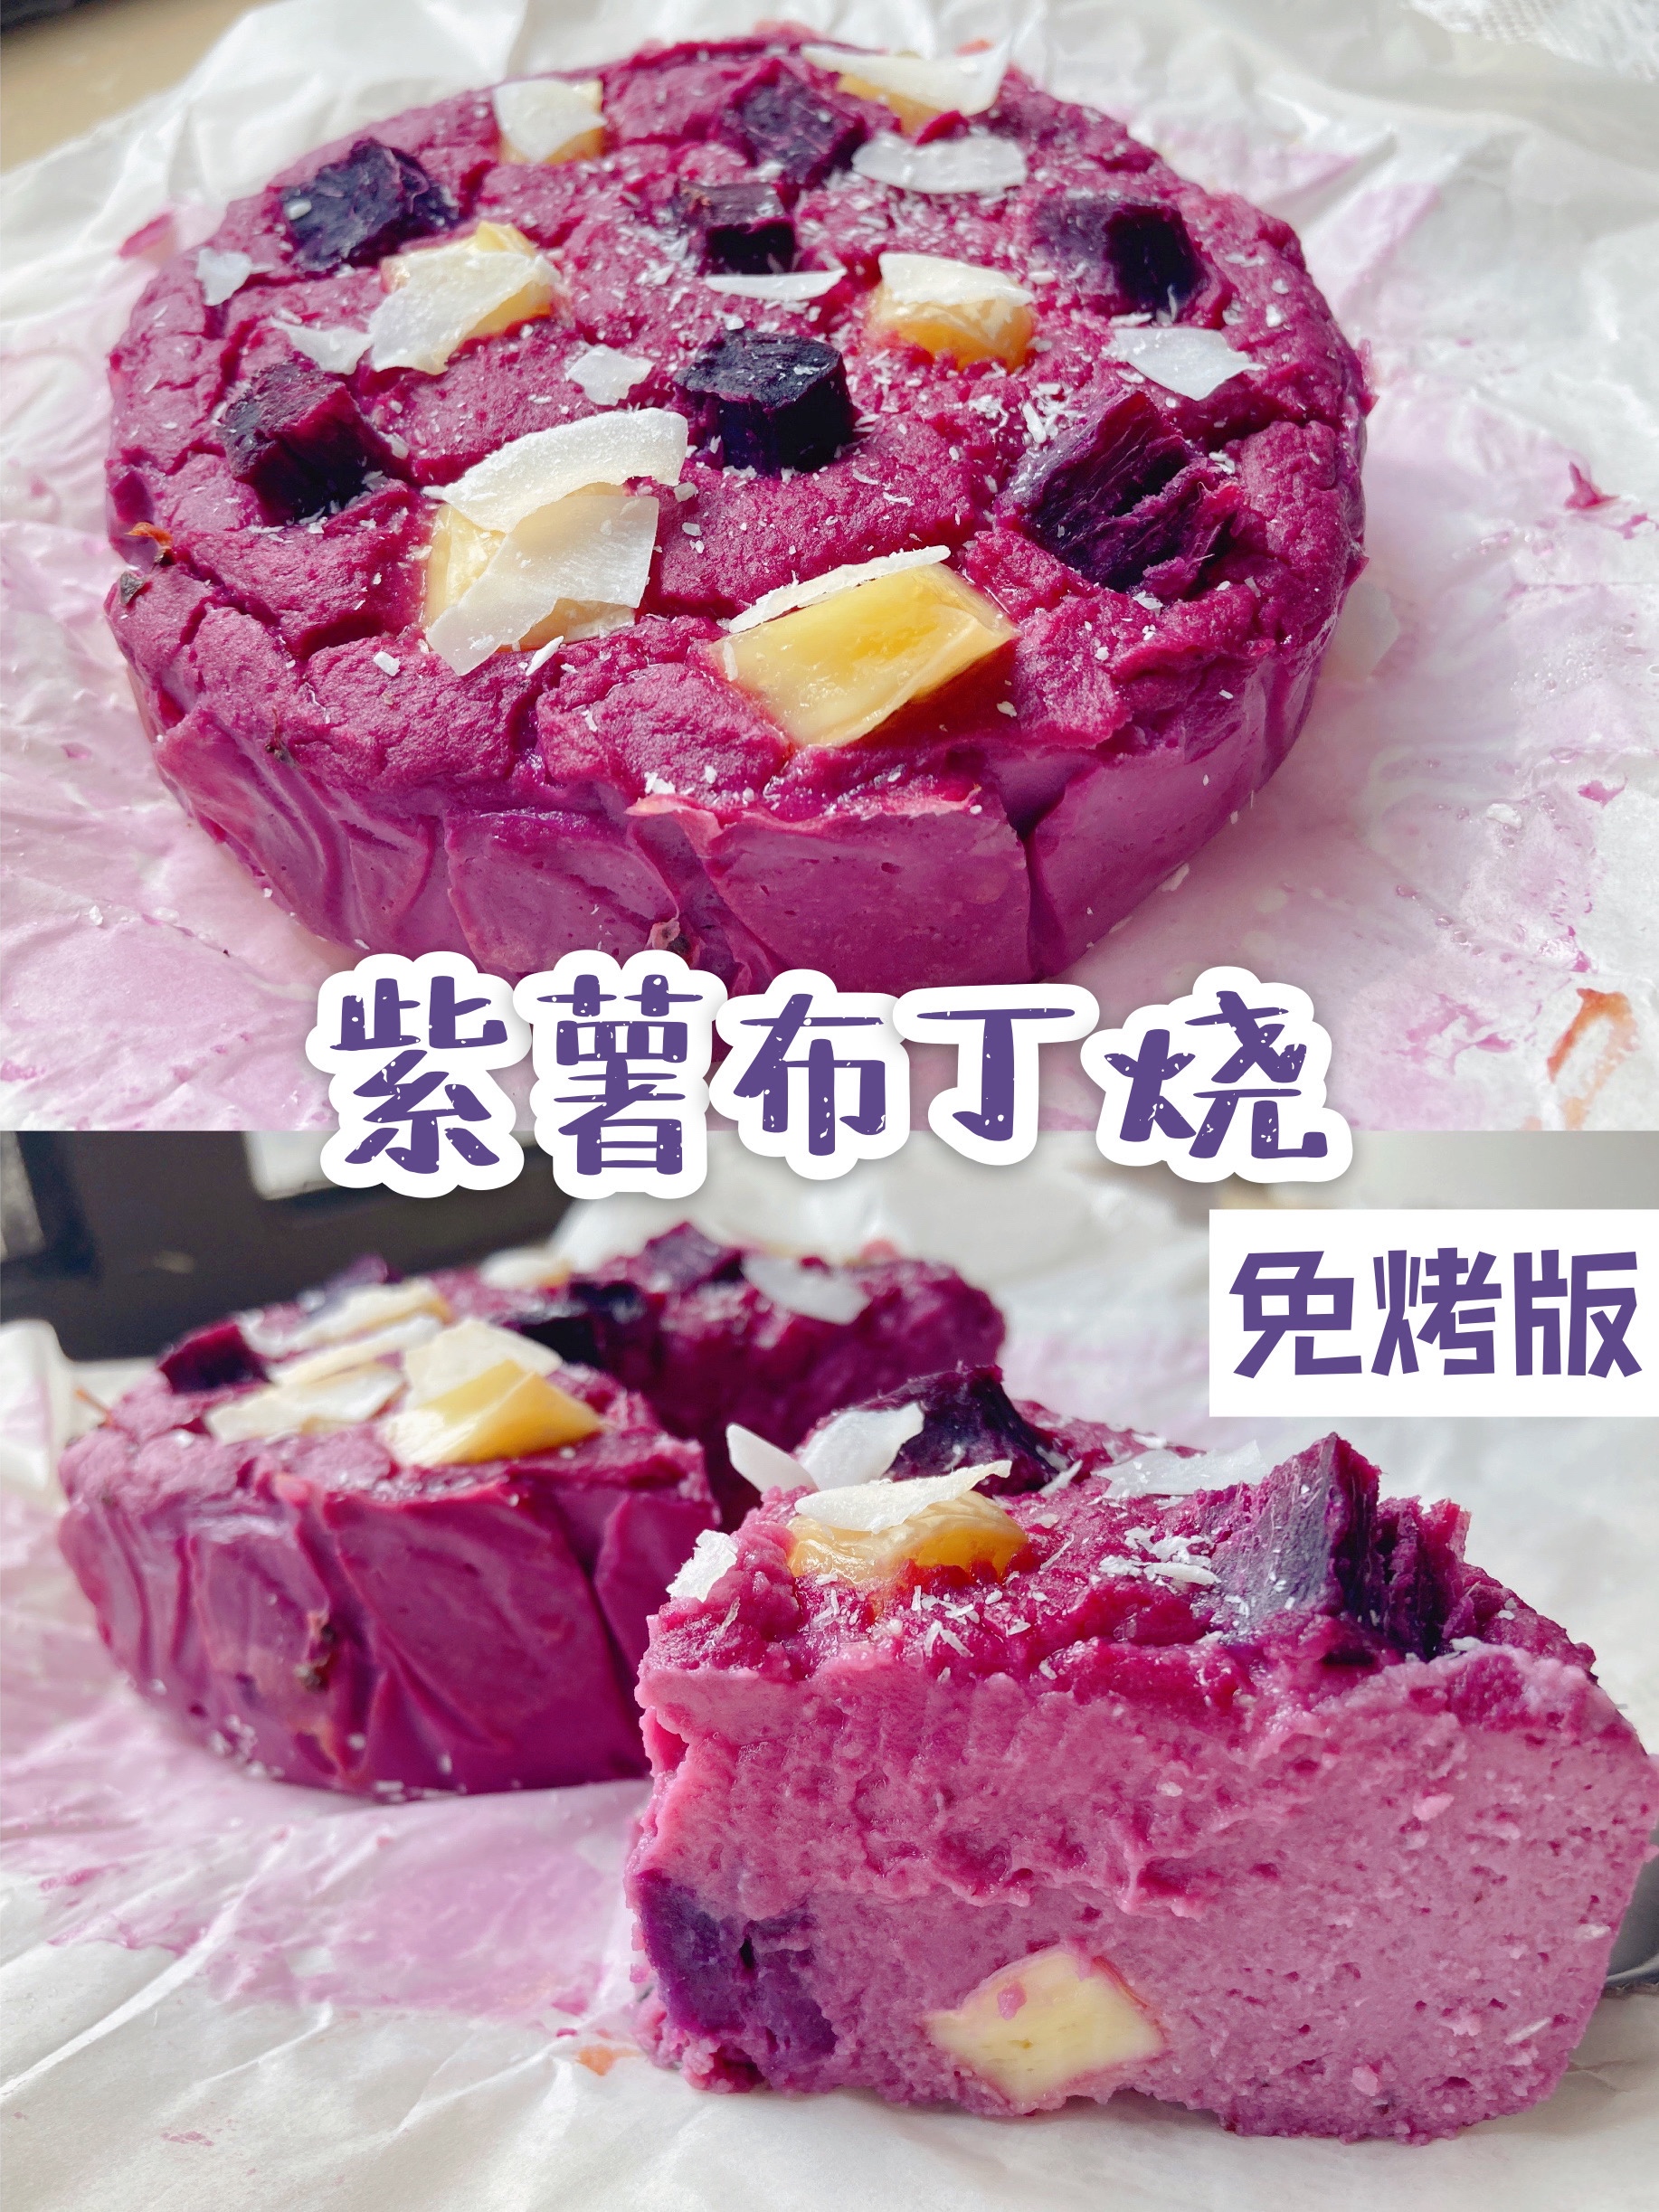 紫薯布丁烧🍠0糖油·113卡·3种原料就搞定的做法